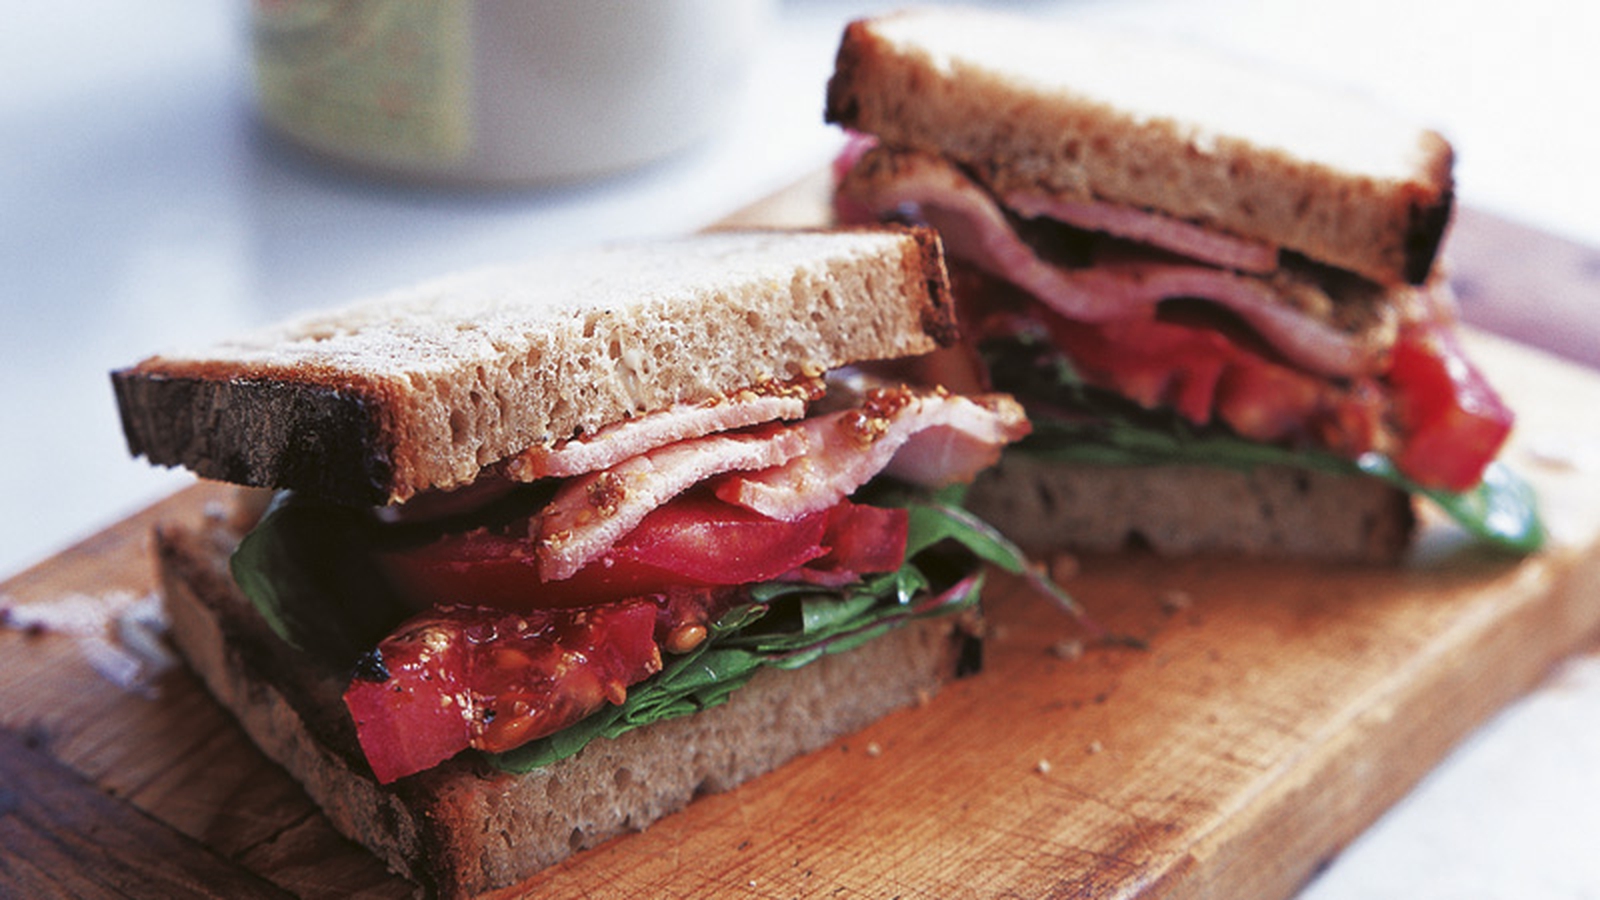 crispy bacon sandwich